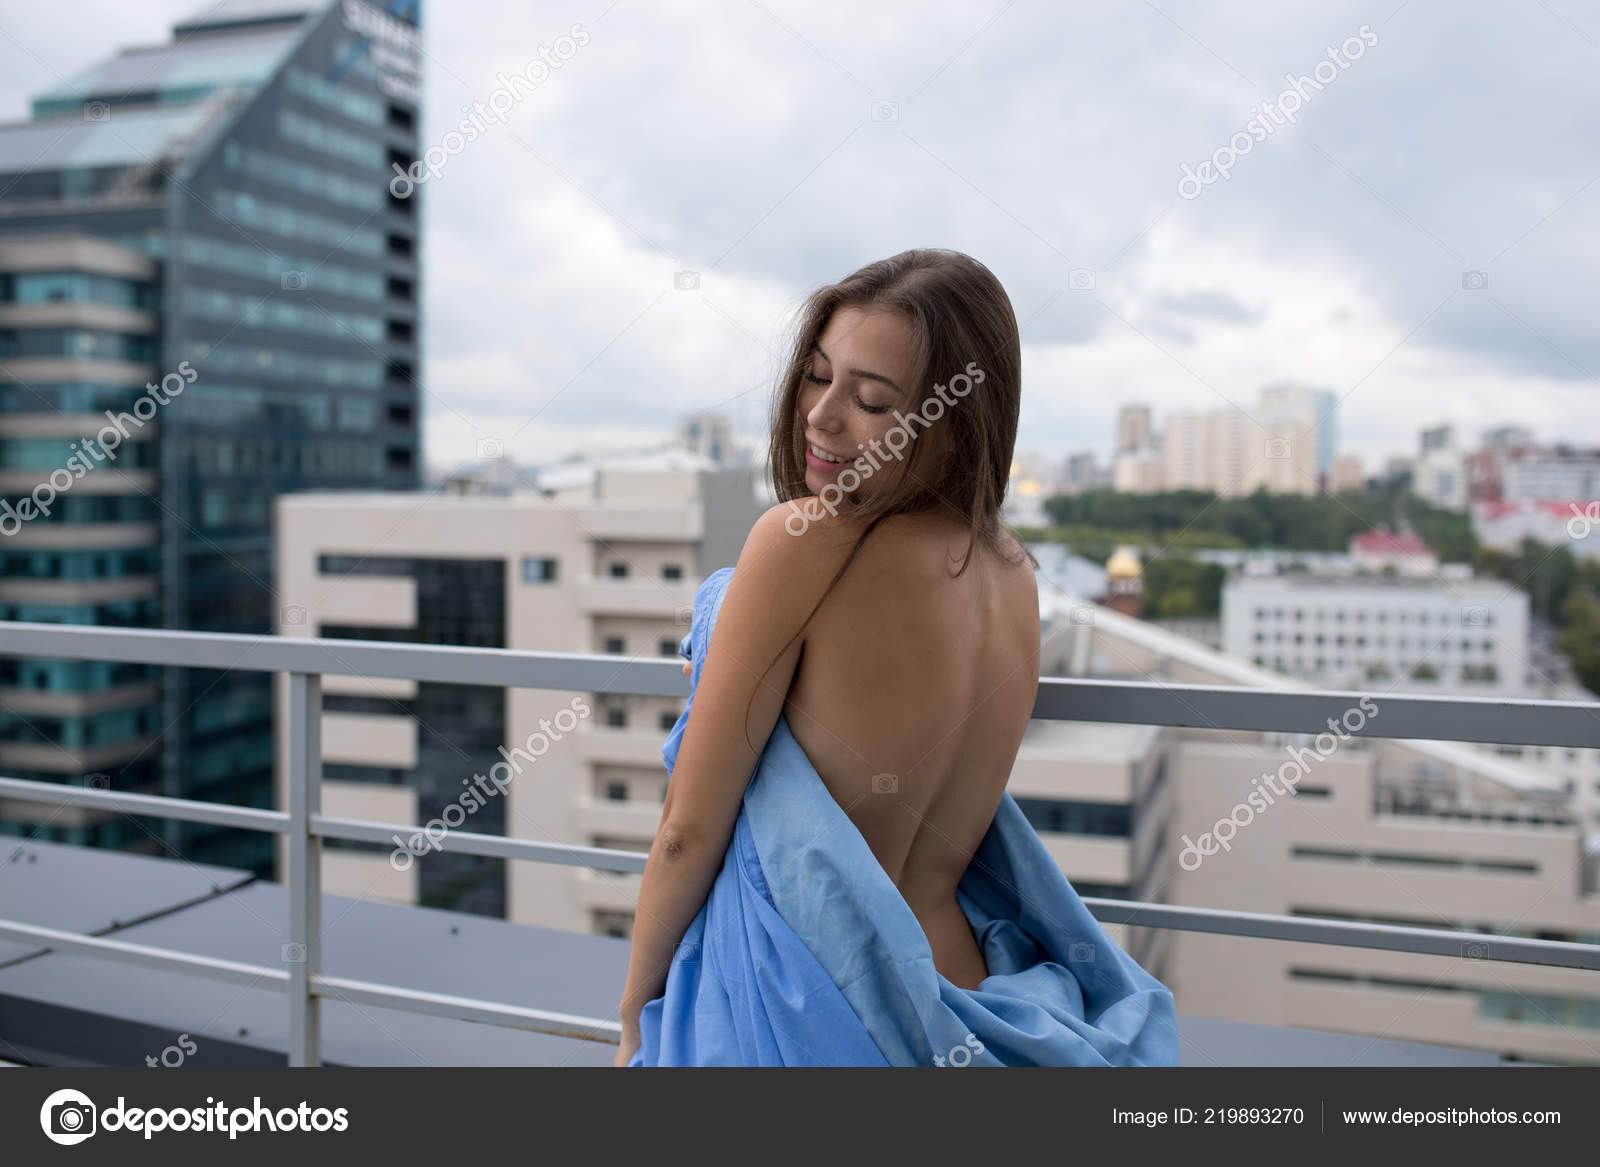 Chica desnuda envuelta en una manta se para en la terraza con vistas a la  ciudad .: fotografía de stock © airkost #219893270 | Depositphotos